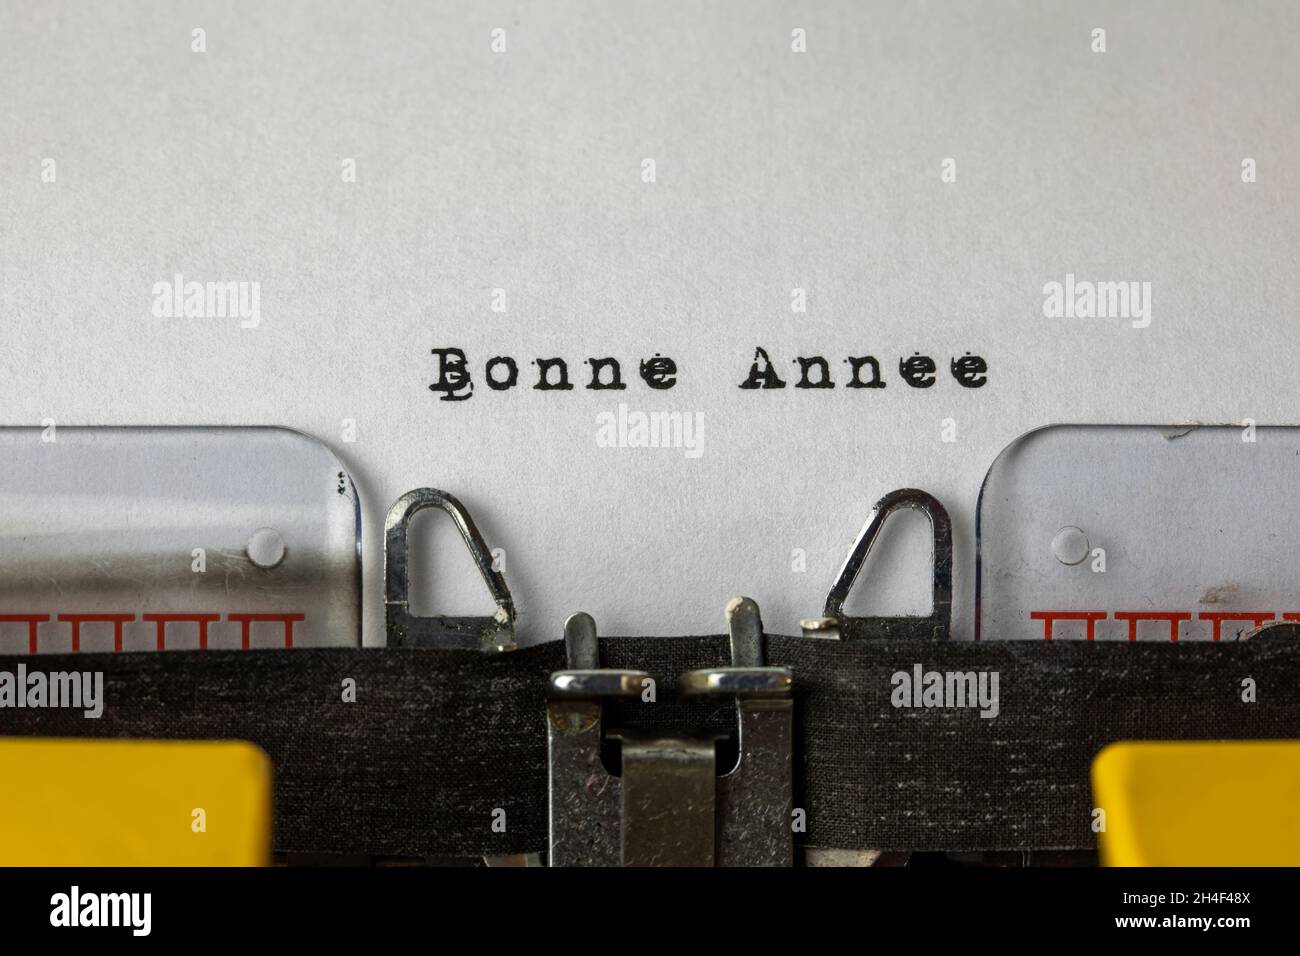 Bonne année escrito en una antigua máquina de escribir (2022 concepto) Foto de stock